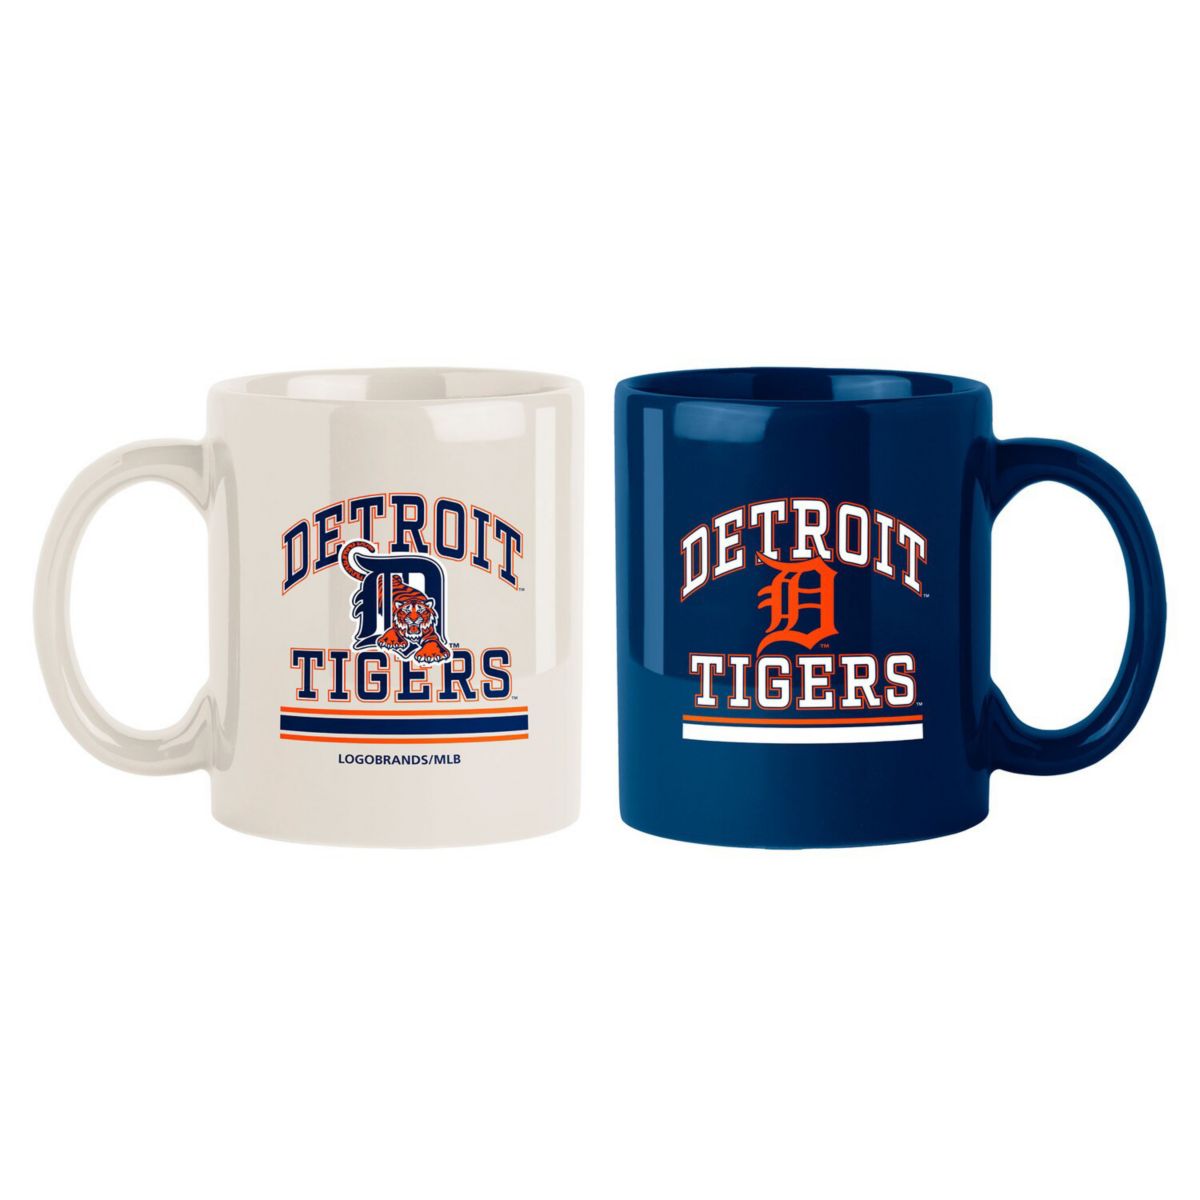 Detroit Tigers 15oz. Color Mug 2-Pack Set Logo Brand